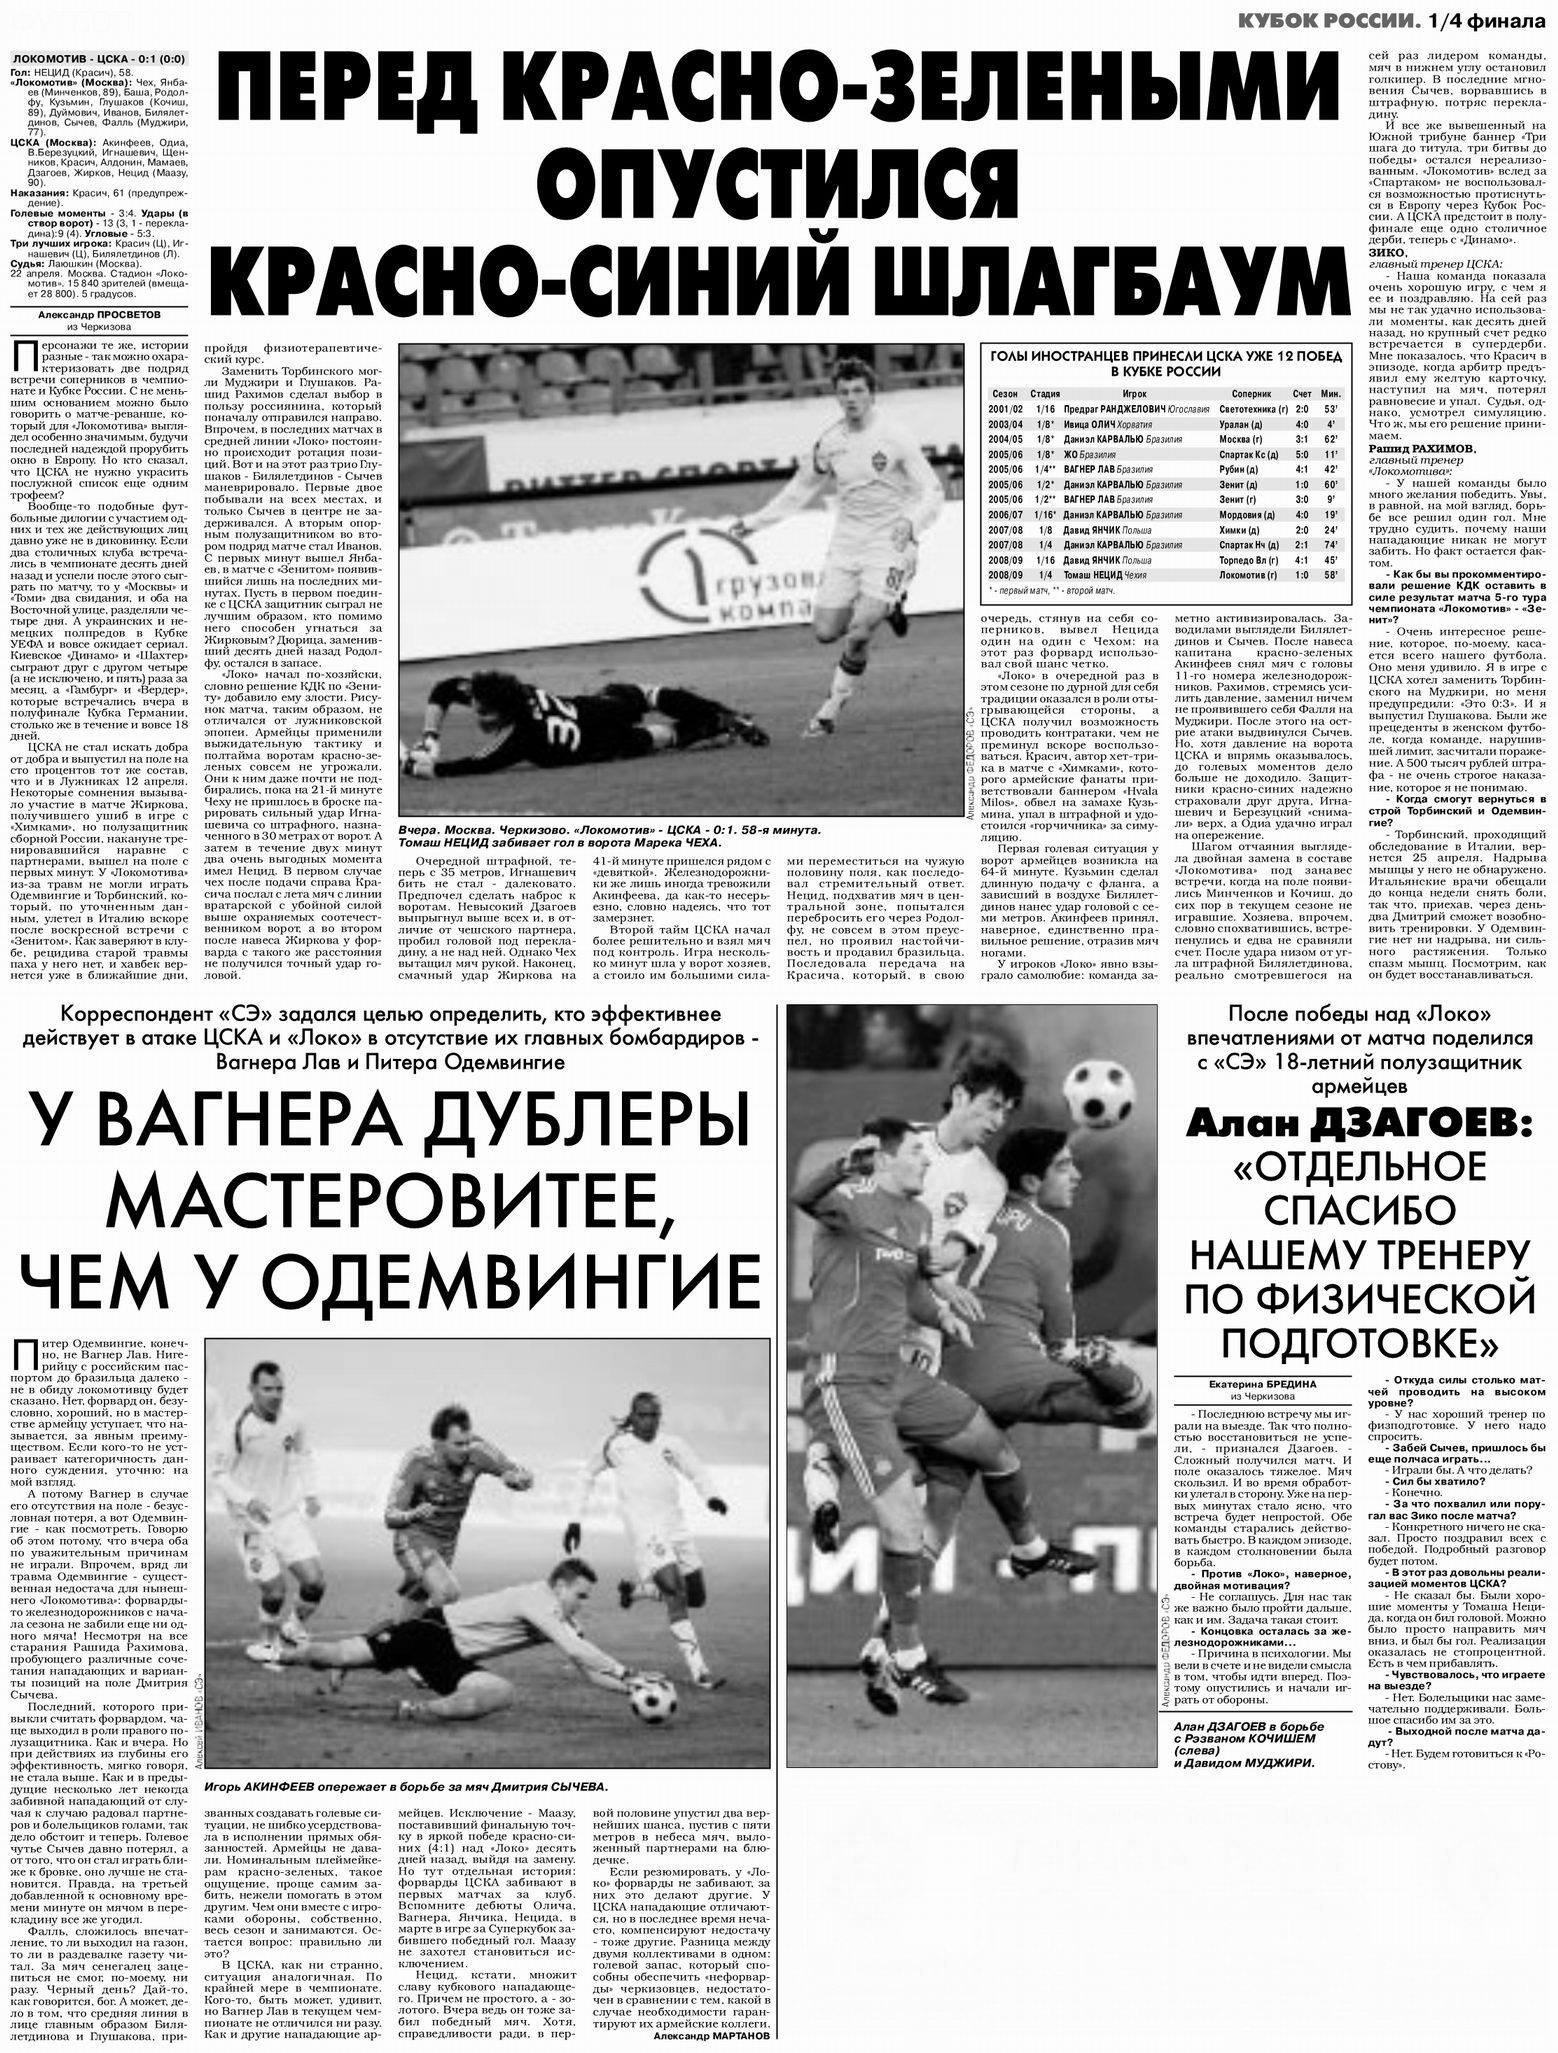 2009-04-22.LokomotivM-CSKA